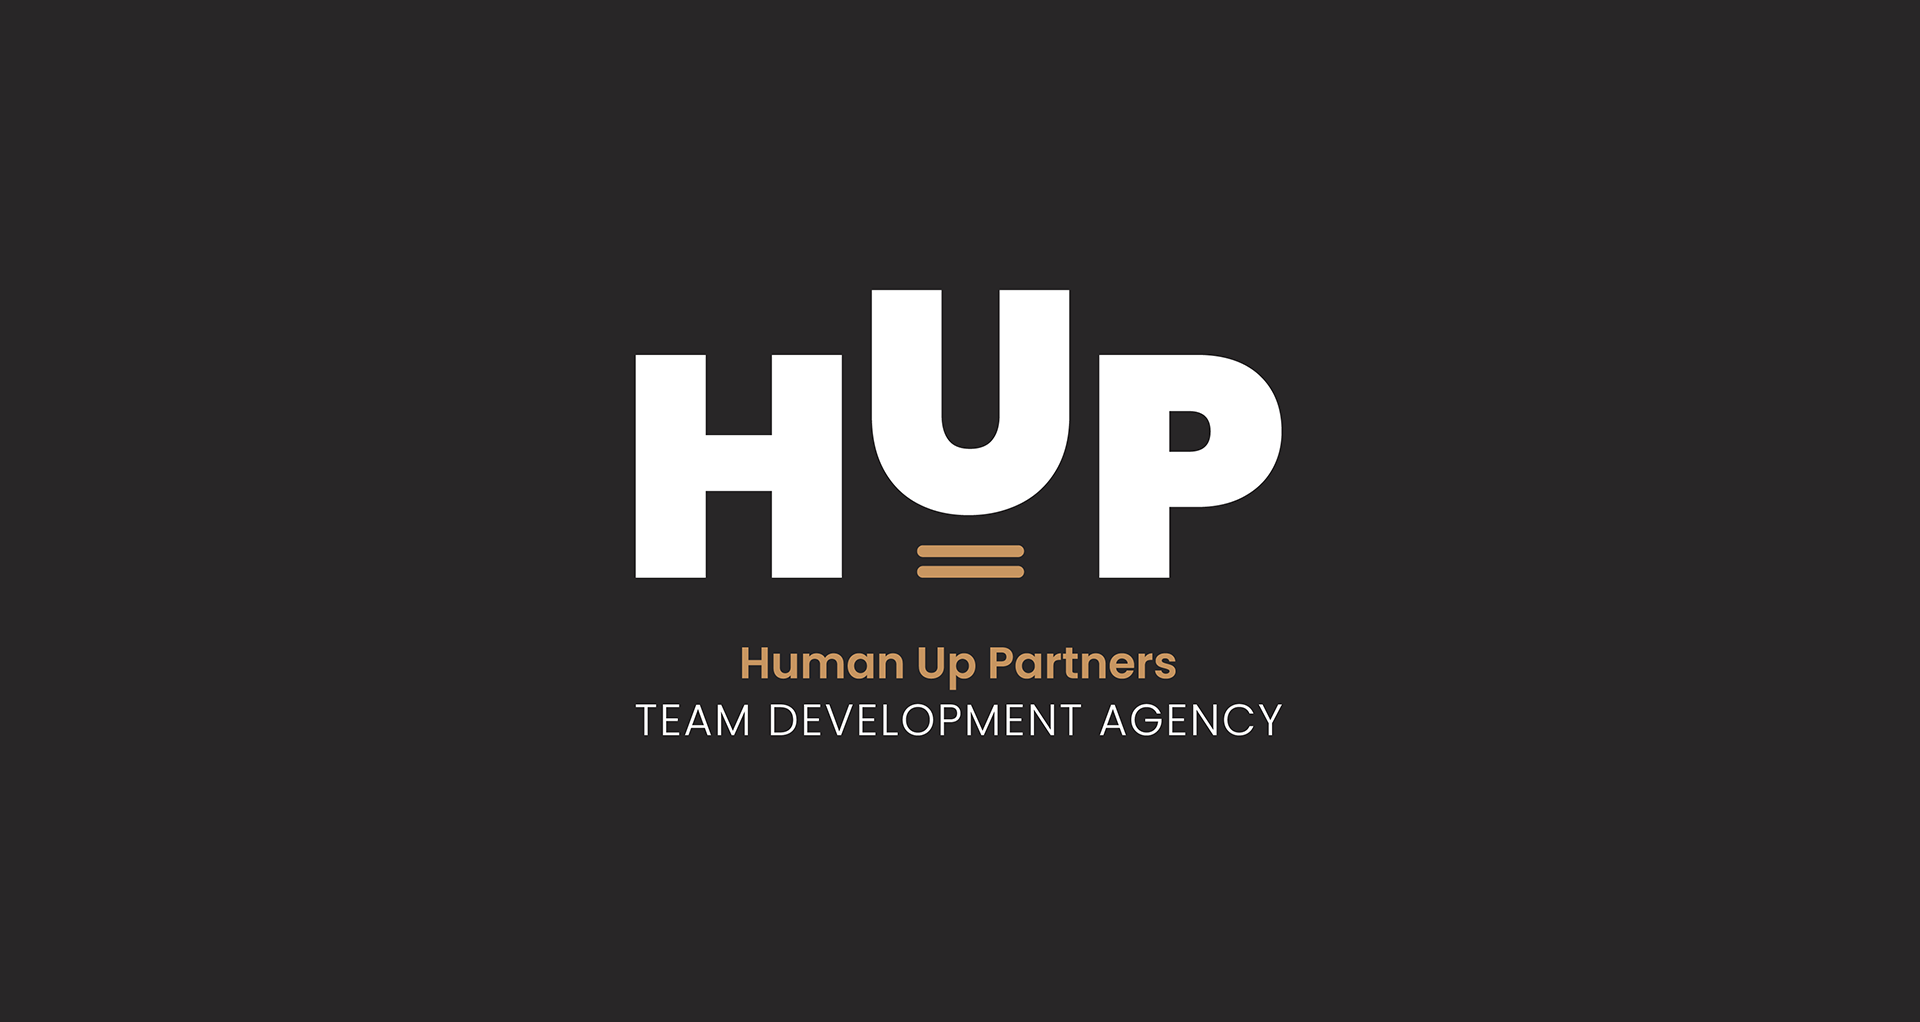 HUP team development agency